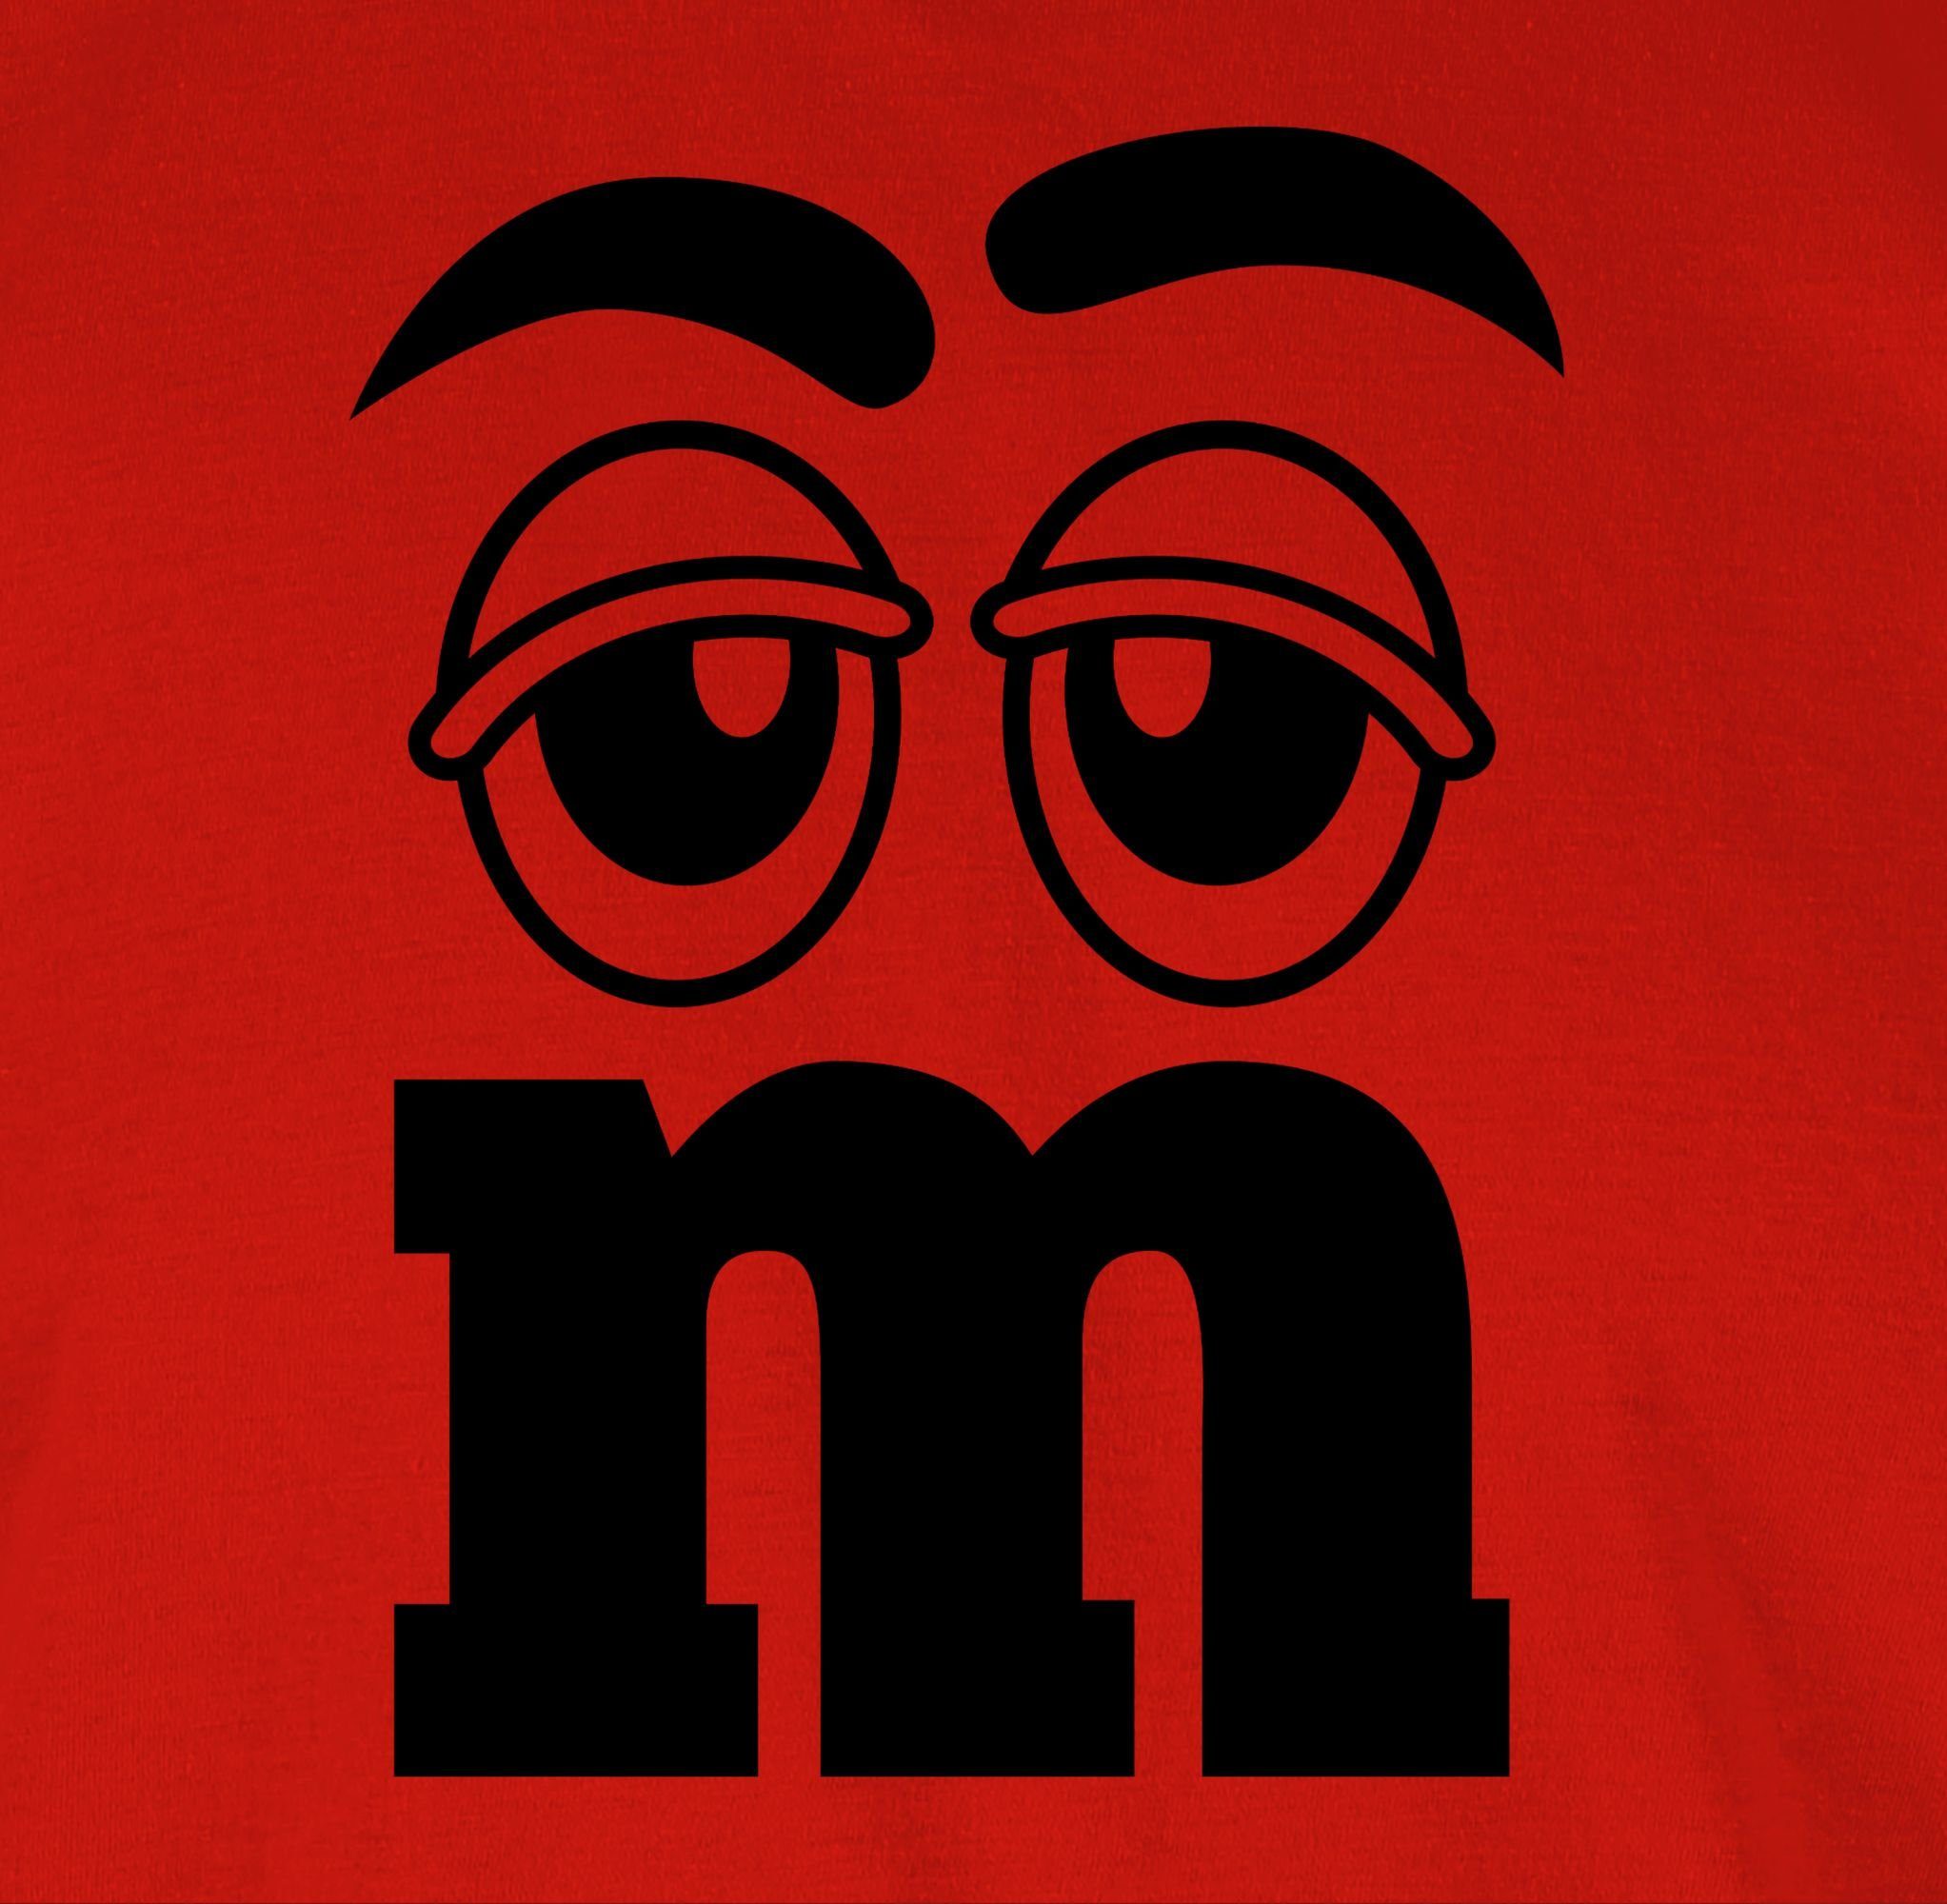 01 & Aufdruck M&M Karneval T-Shirt Rot M M Fasching Shirtracer und Figuren